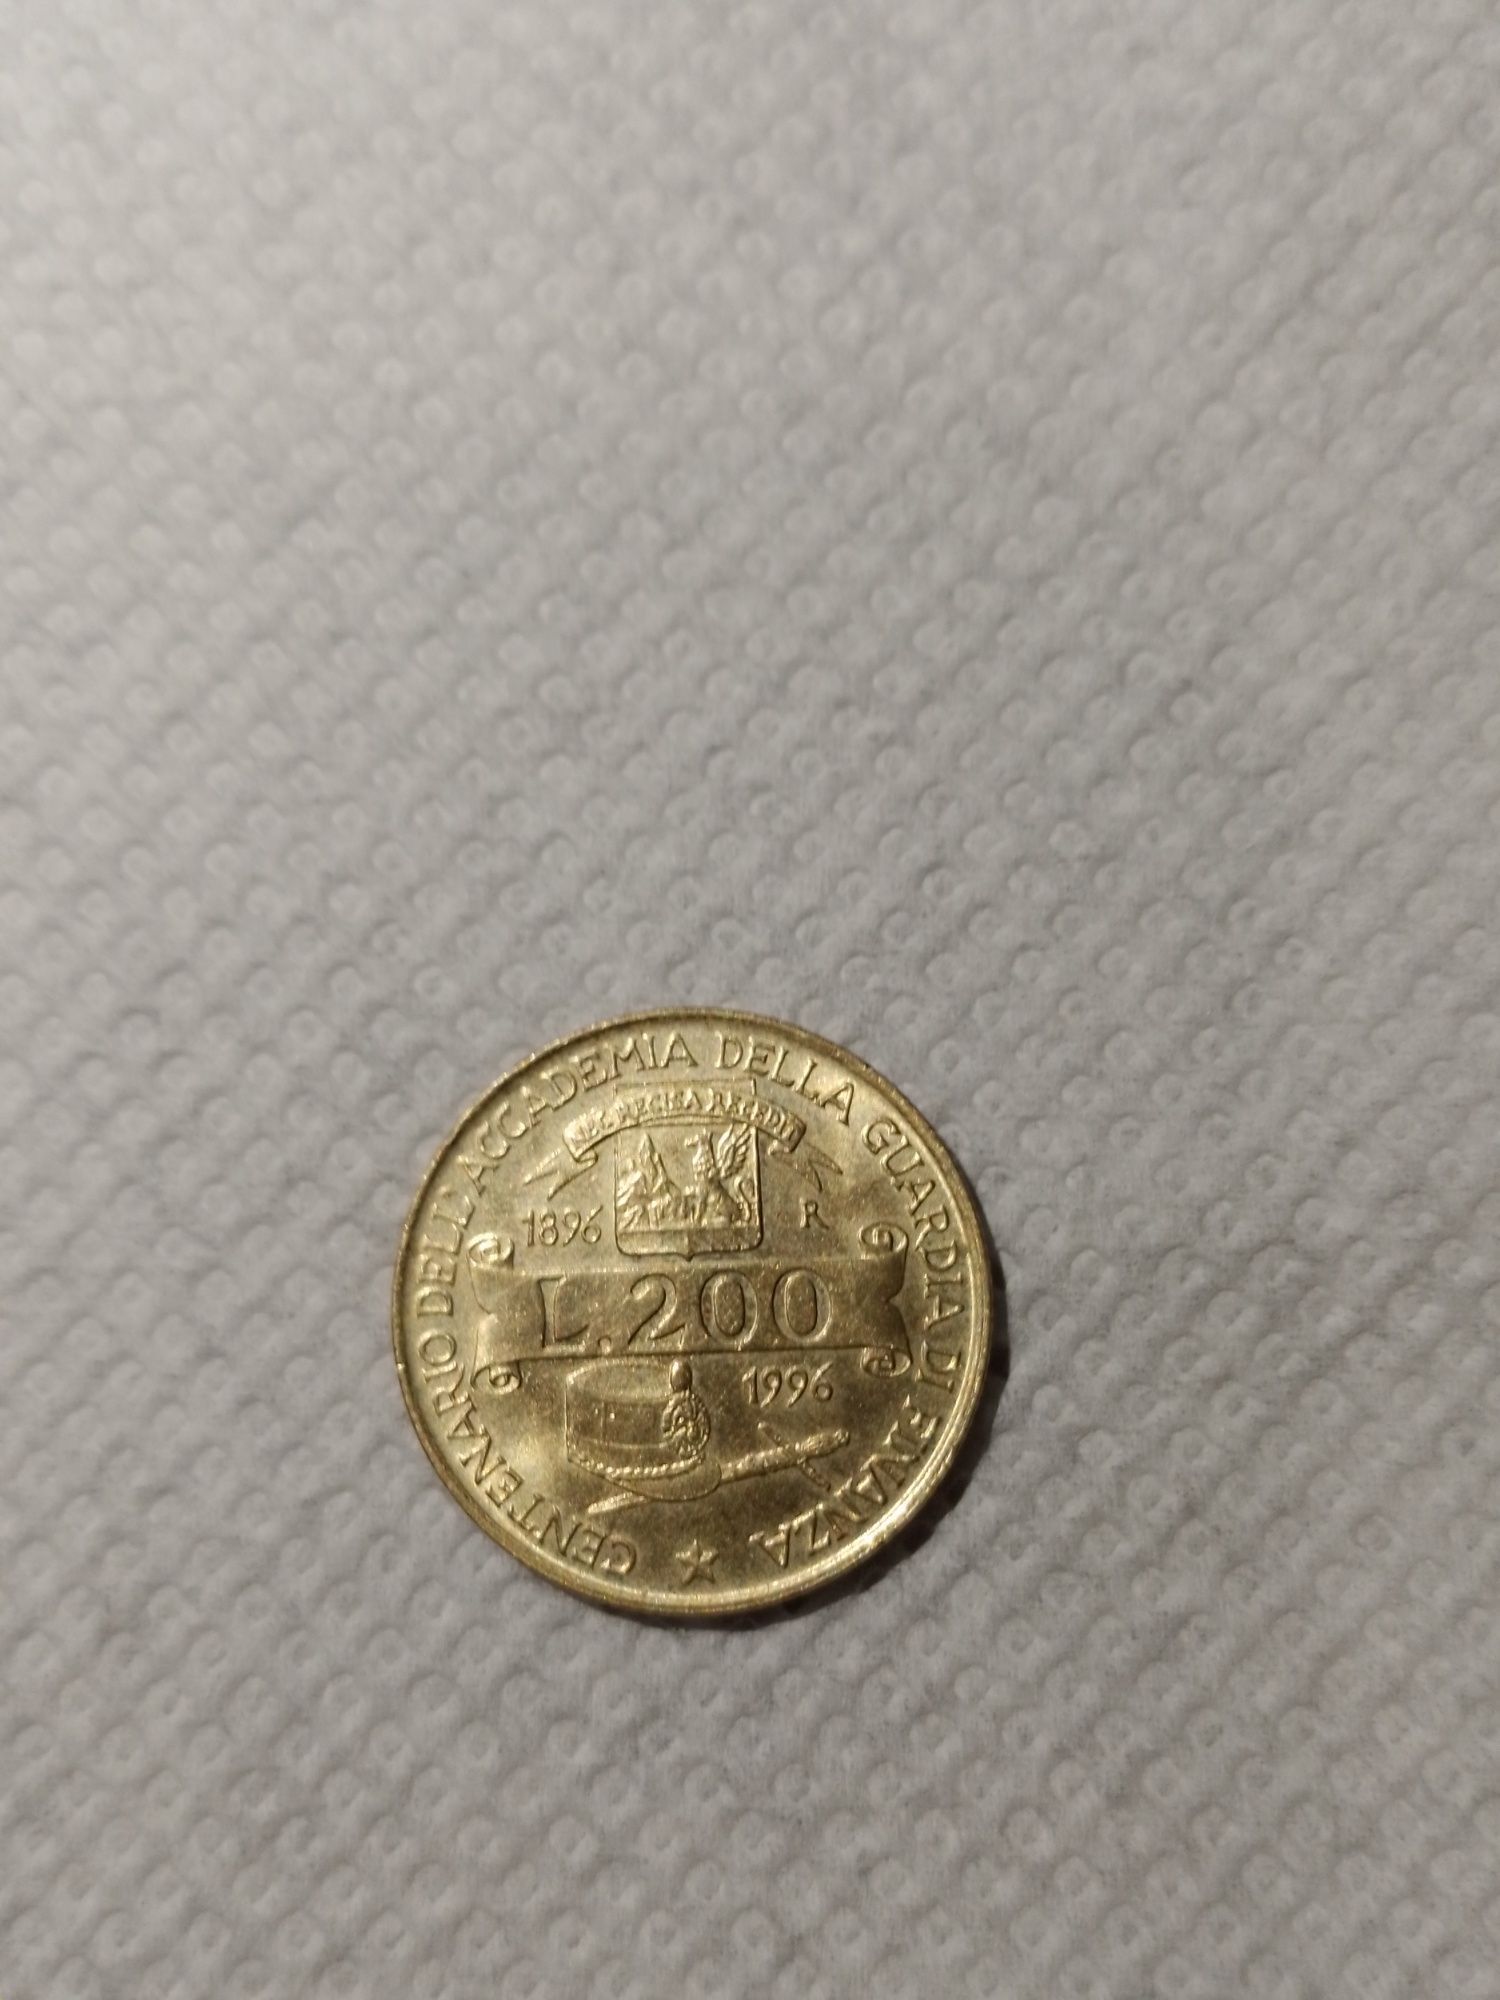 Vând monede vechi scoase din circulatie